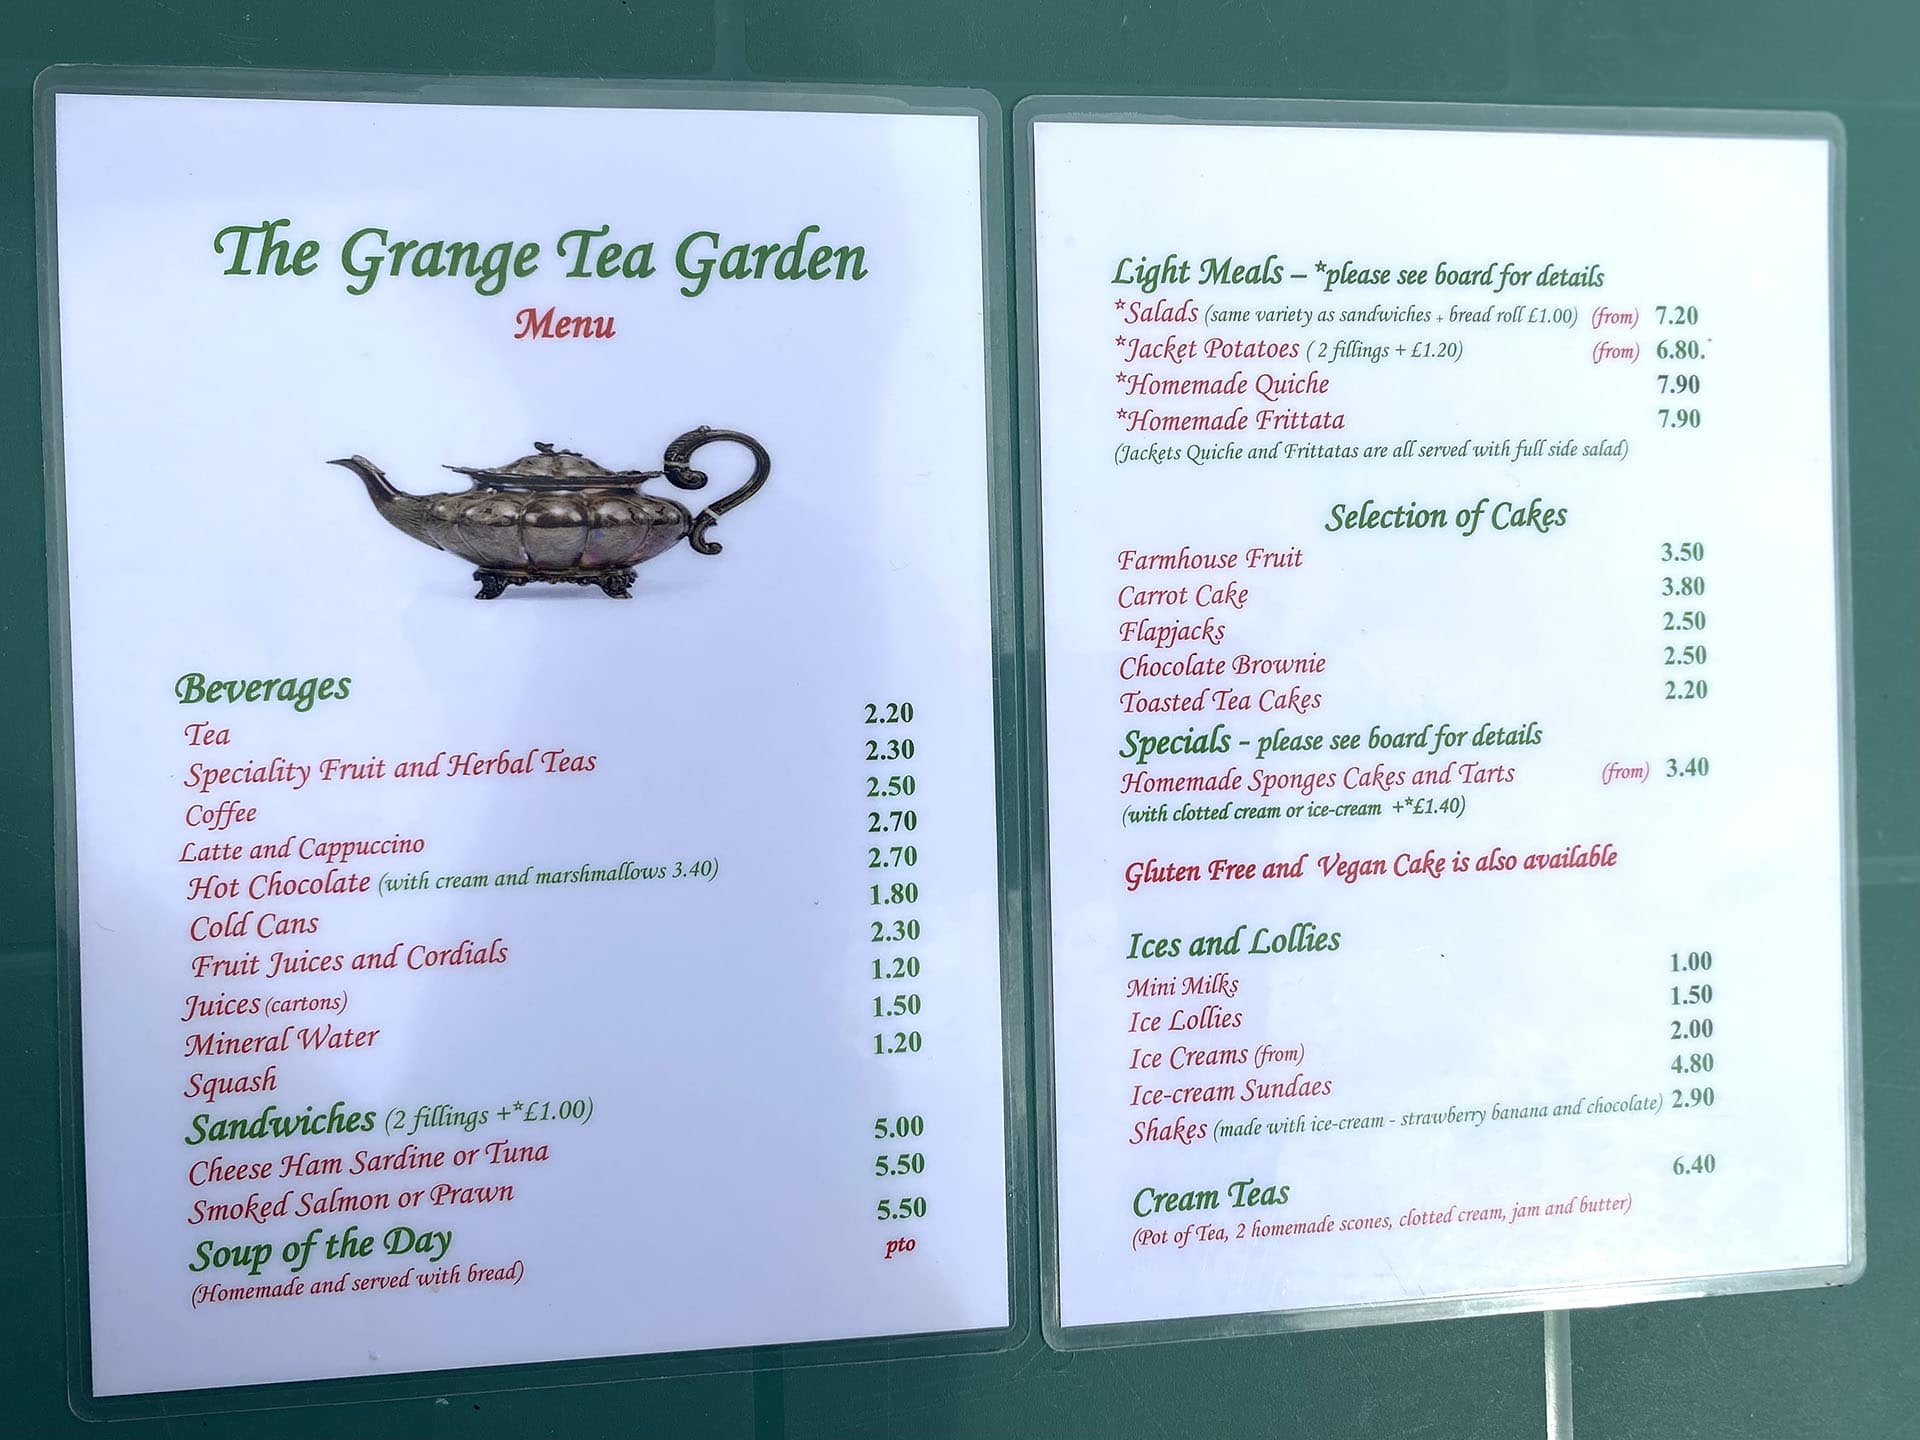 The Grange Tea Garden menu